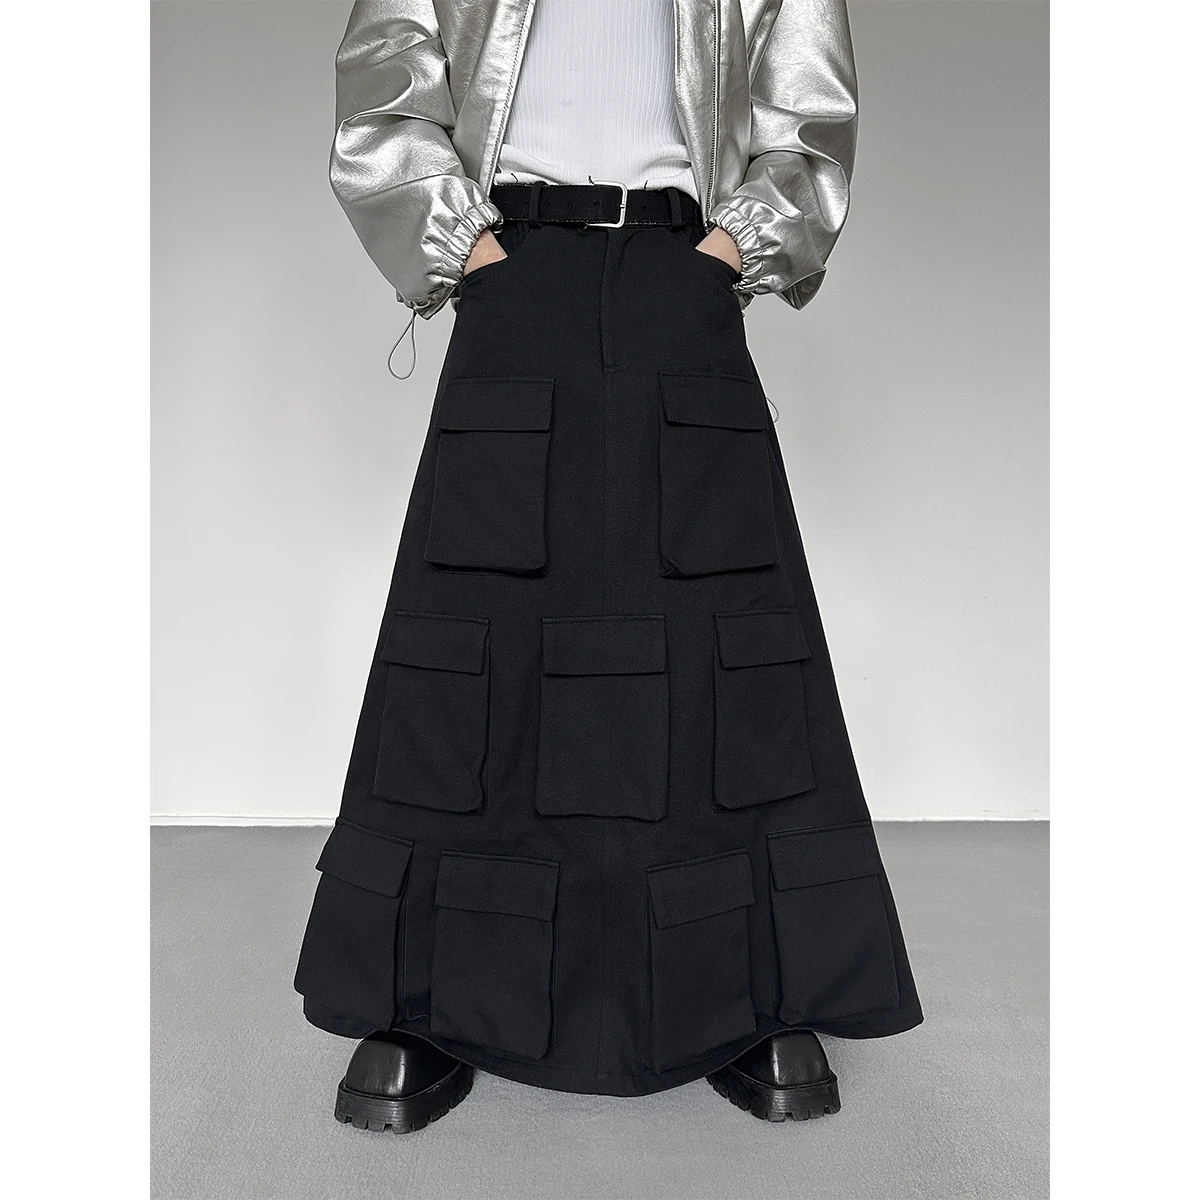 

Костюм с юбкой без пола в японском стиле Ямамото, модная мужская длинная черная юбка с несколькими карманами, модный подиумный костюм в стиле Хай-стрит